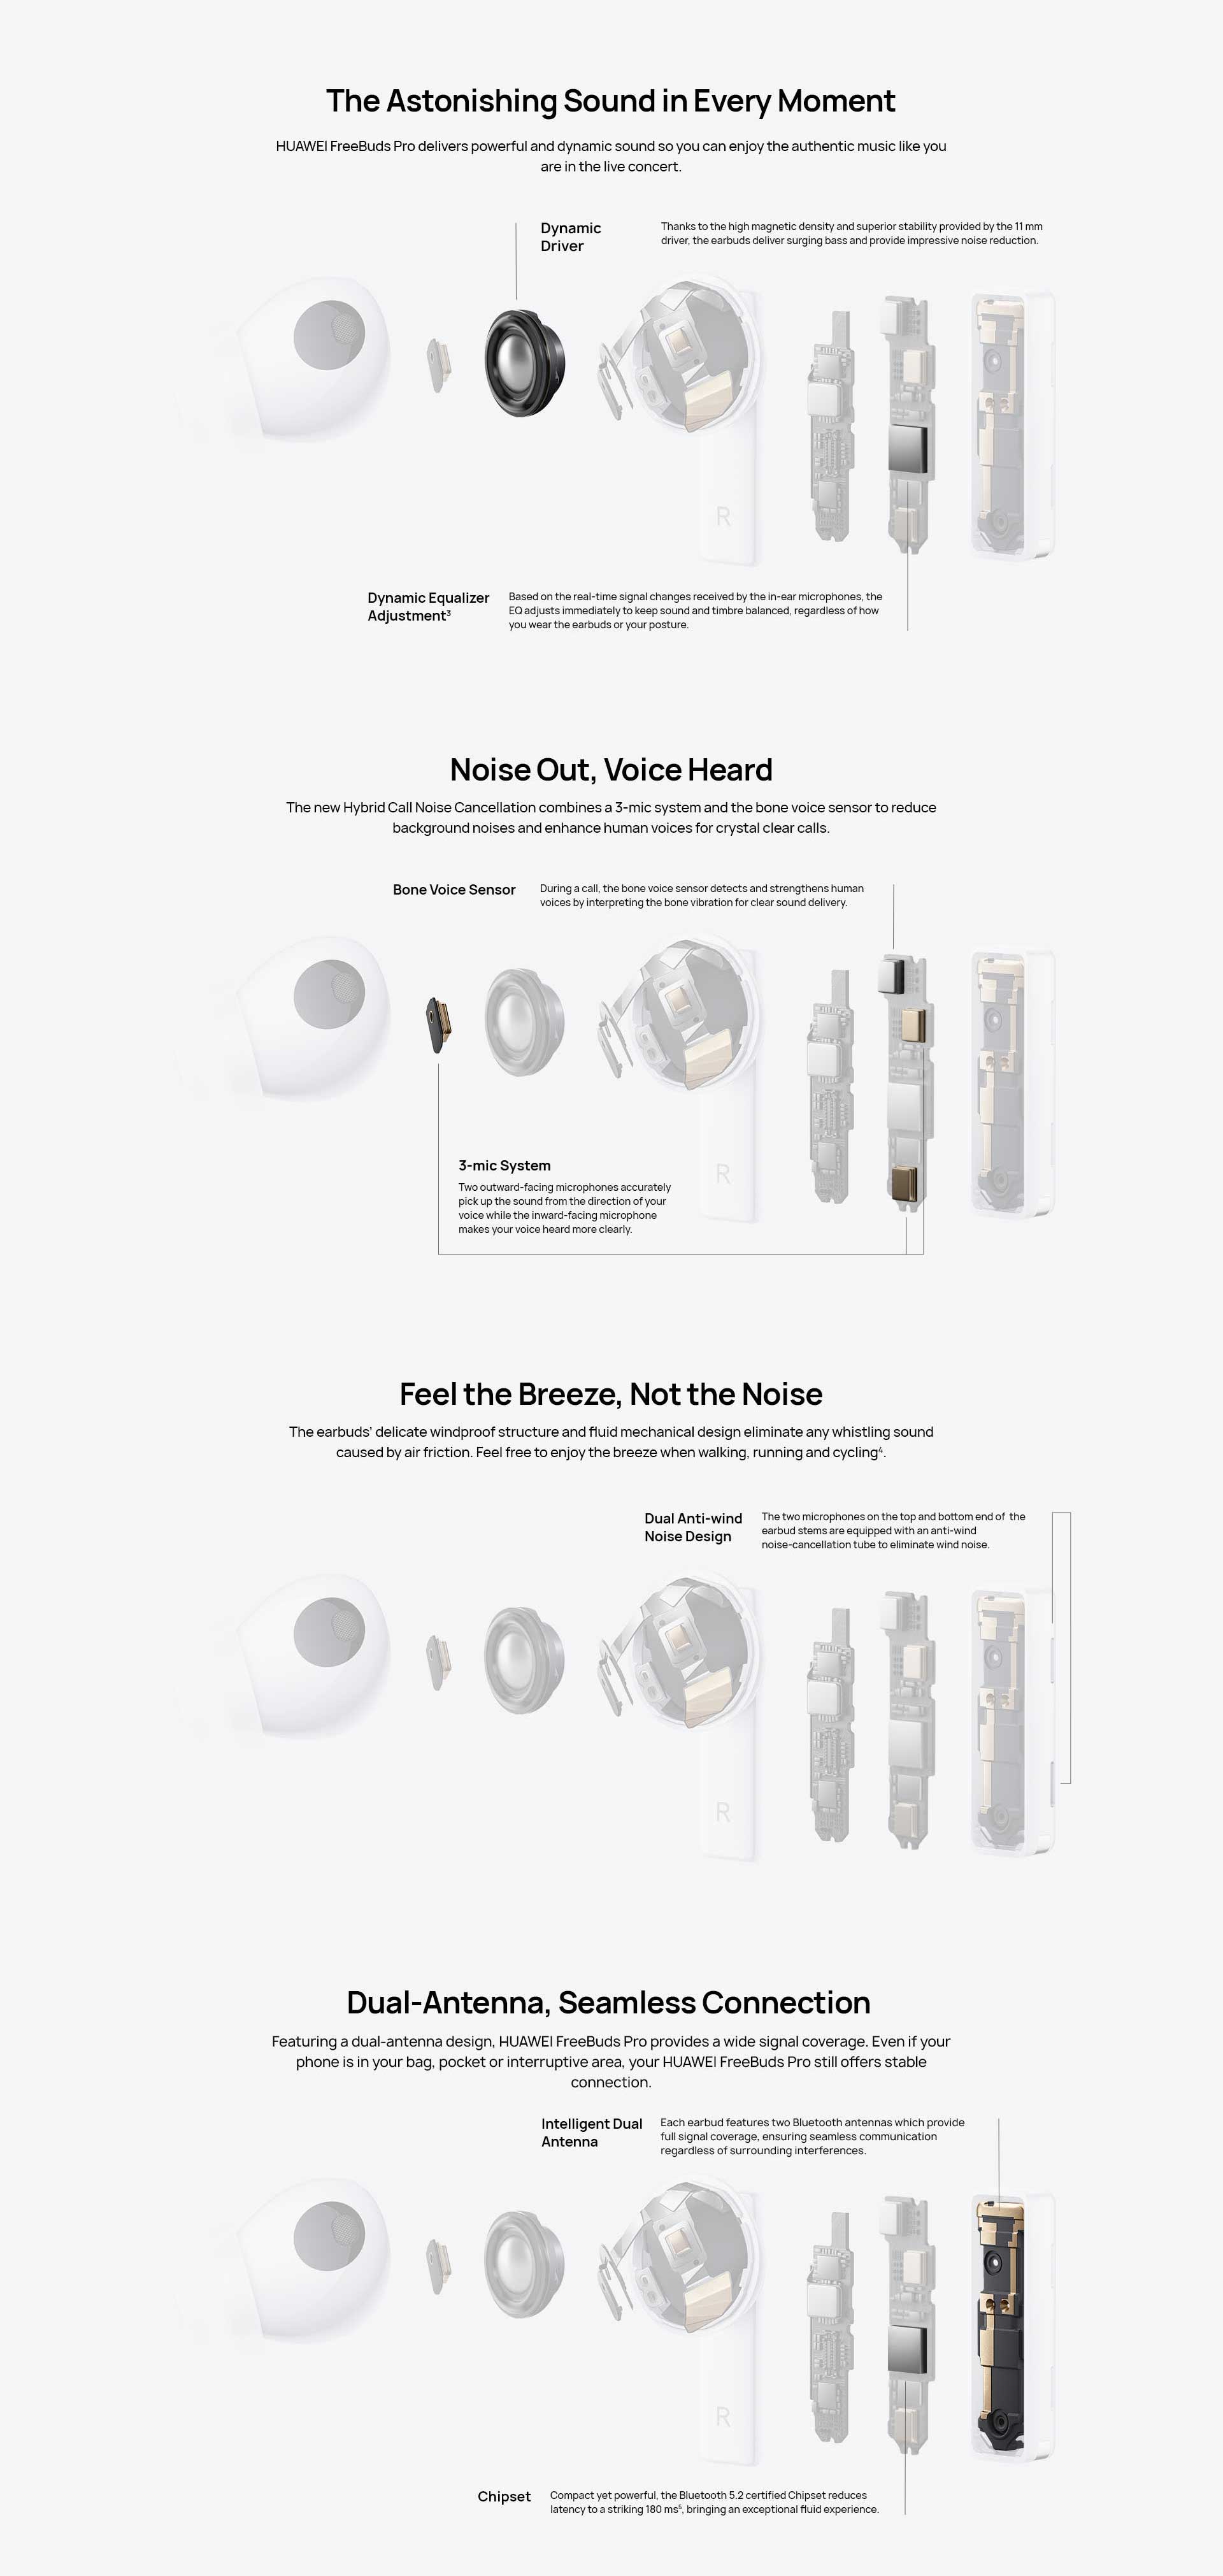 FreeBuds Pro True Wireless In-Ear Bluetooth Earphones Ceramic White